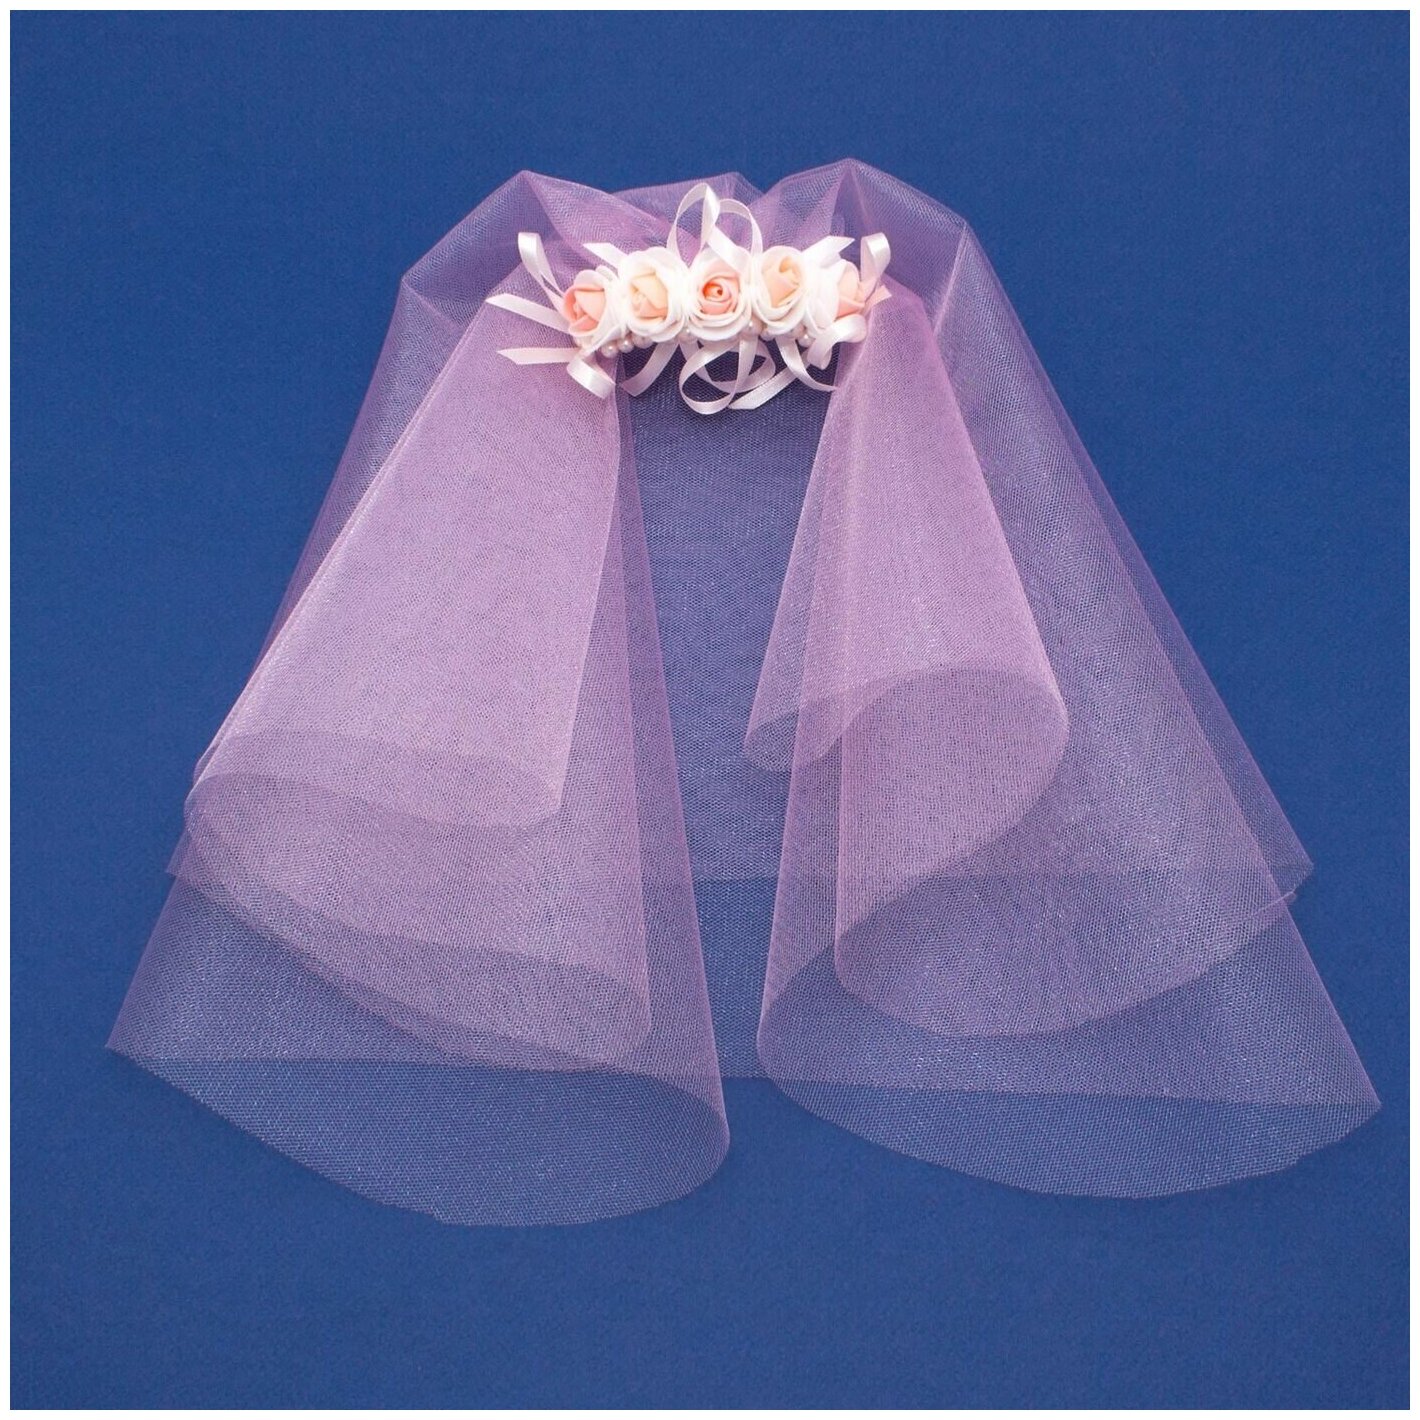 Фата для подружек невесты на девичник из розового фатина на гребне с нежными розочками, розовыми лентами из атласа и жемчужными бусинами